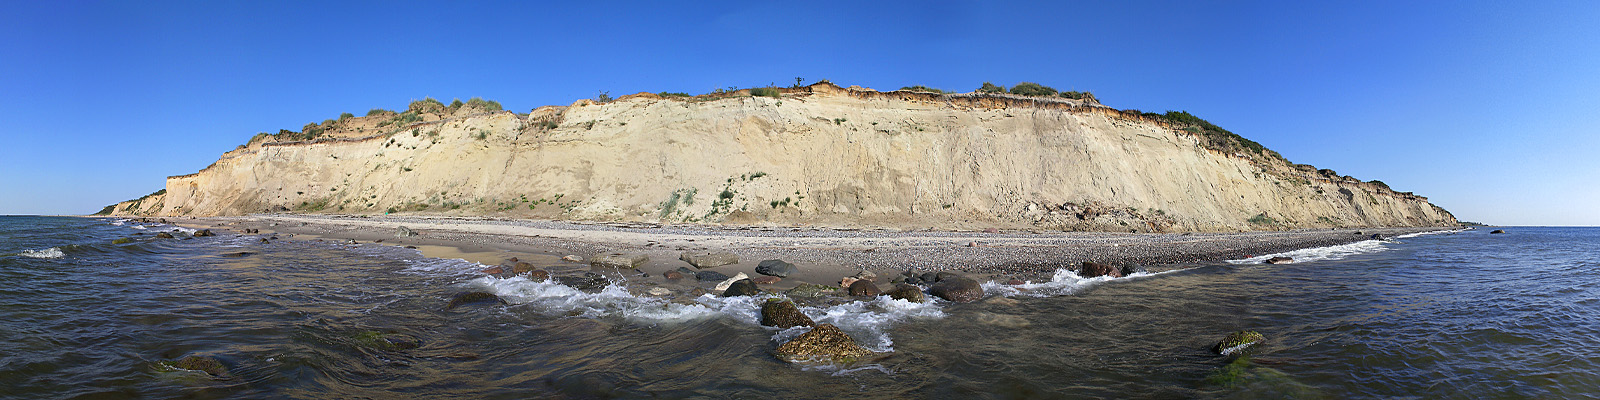 Panorama: Hohes Ufer von unten - Motivnummer: fdz-hoh-04